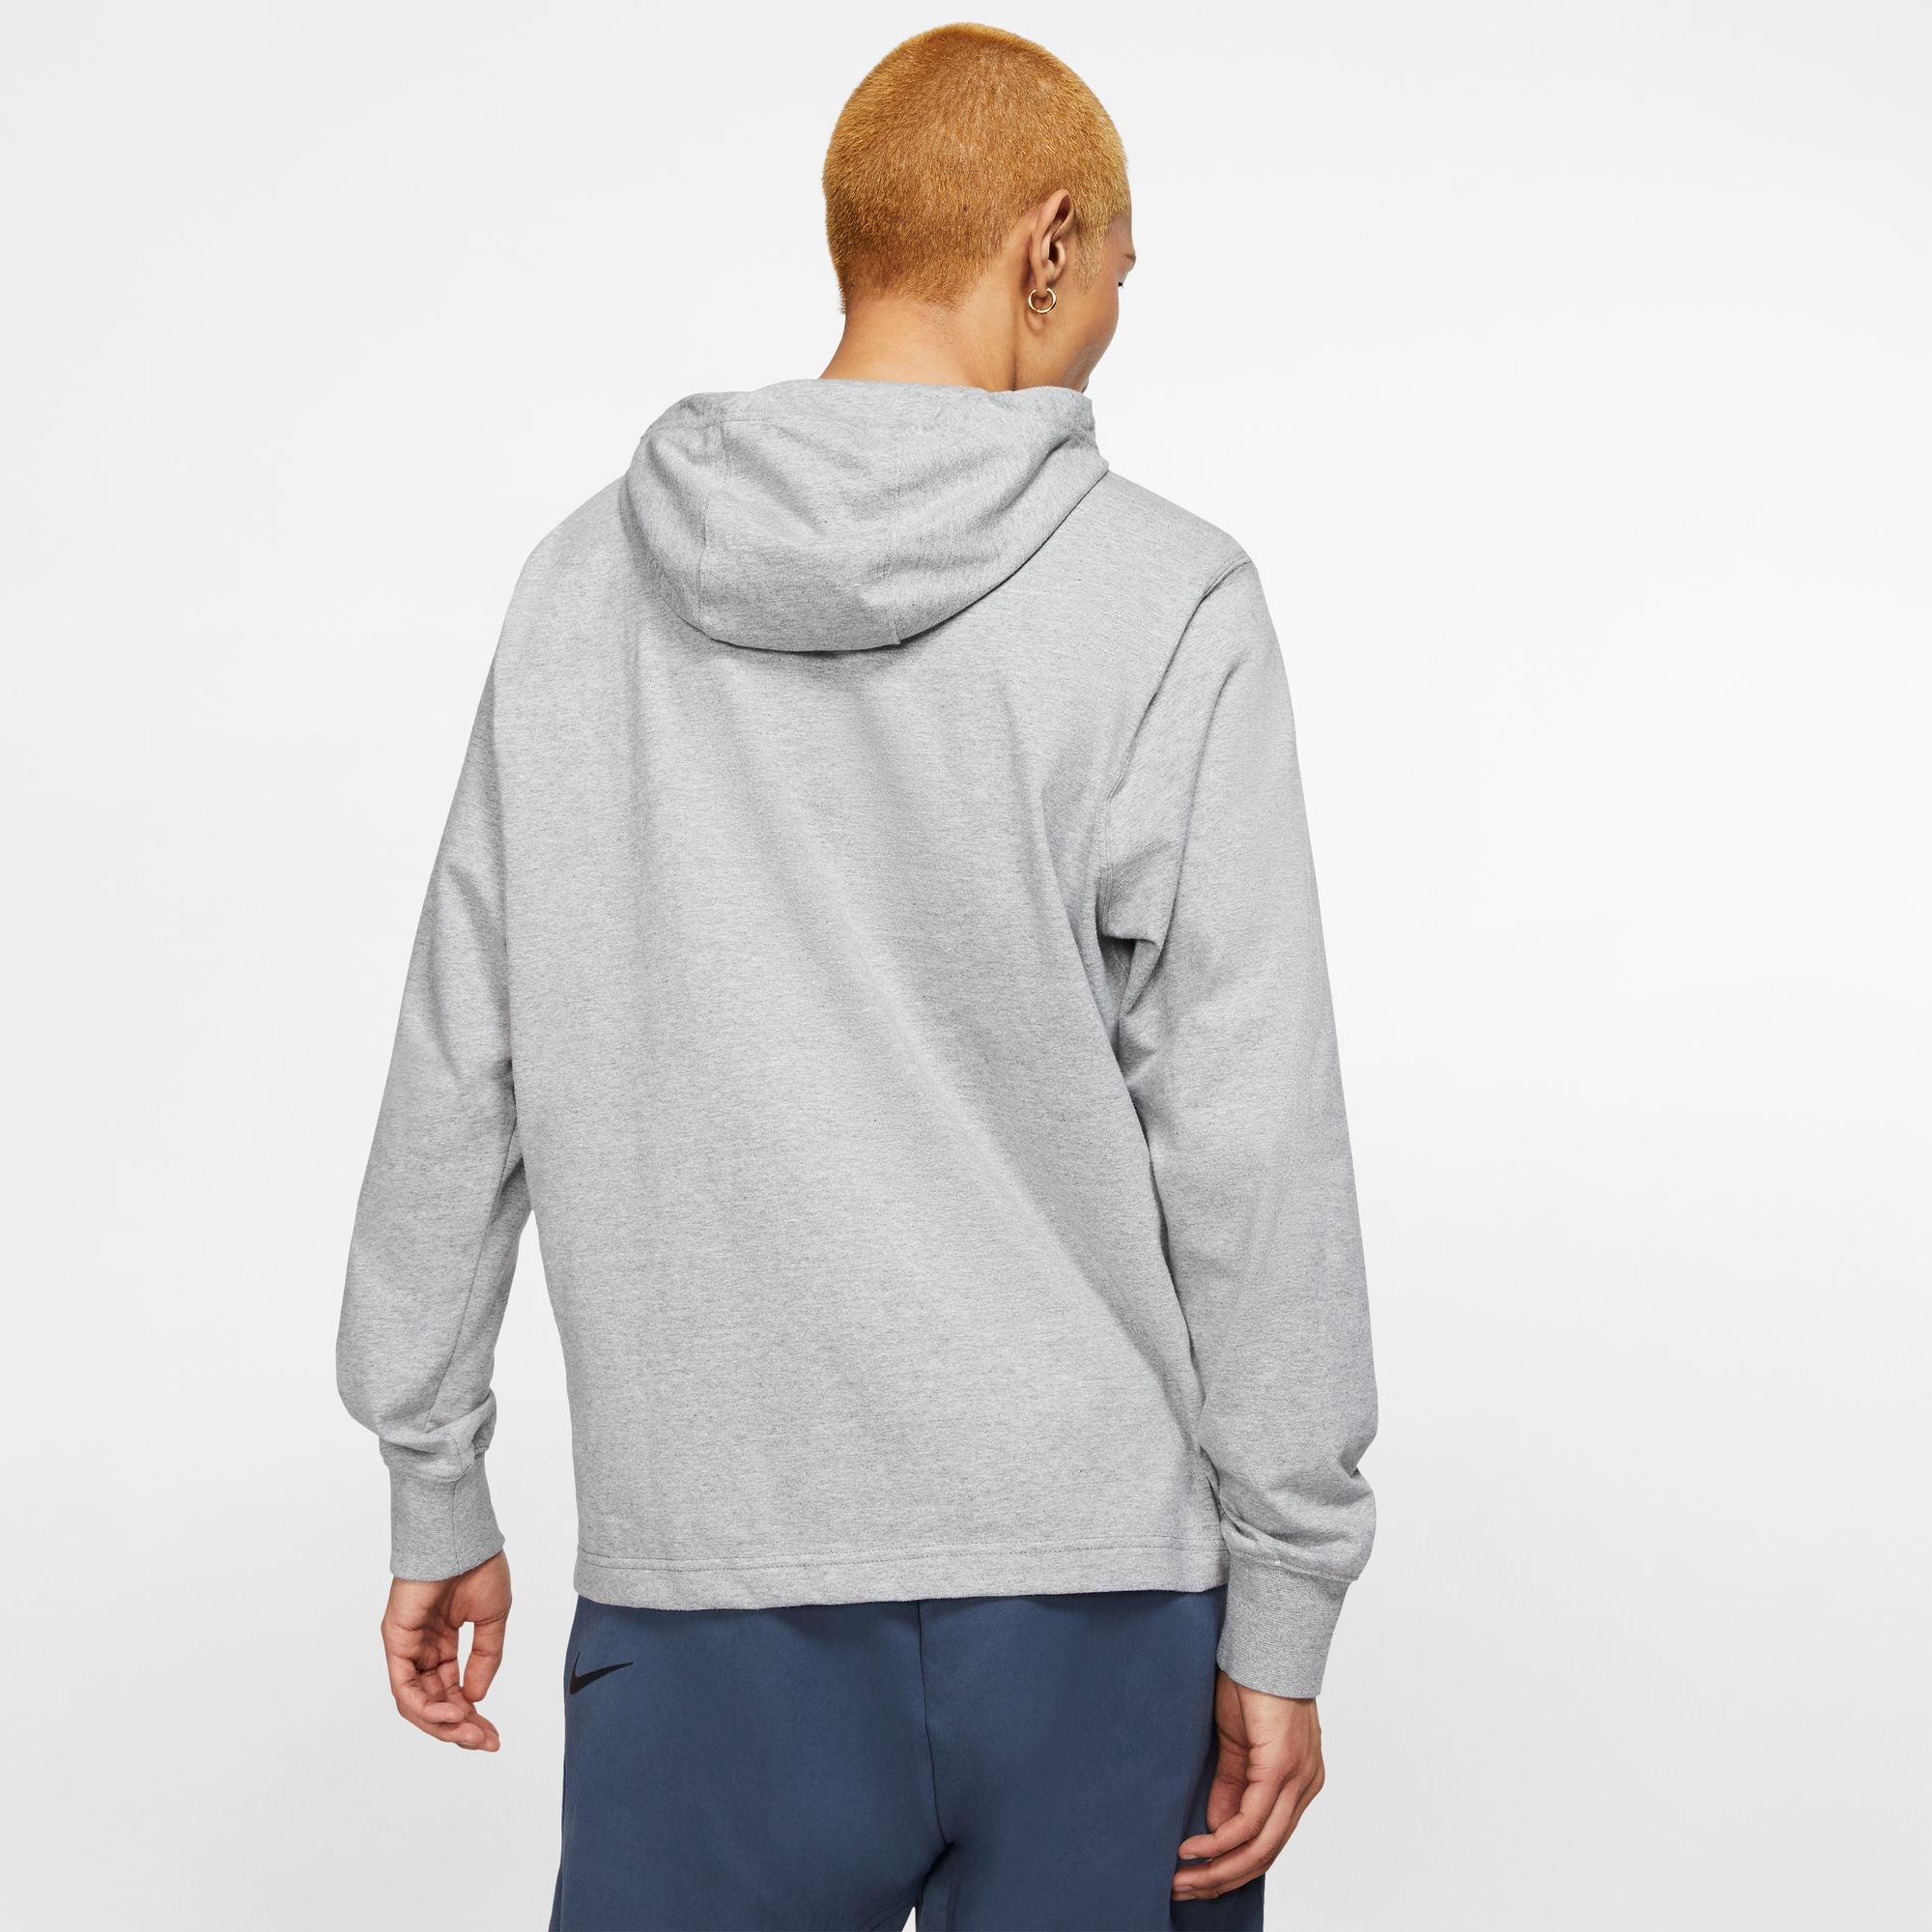 Angebot ermöglichen Nike Men\'s Stock SS Pullover Dri-Fit Hoodie Spotlight